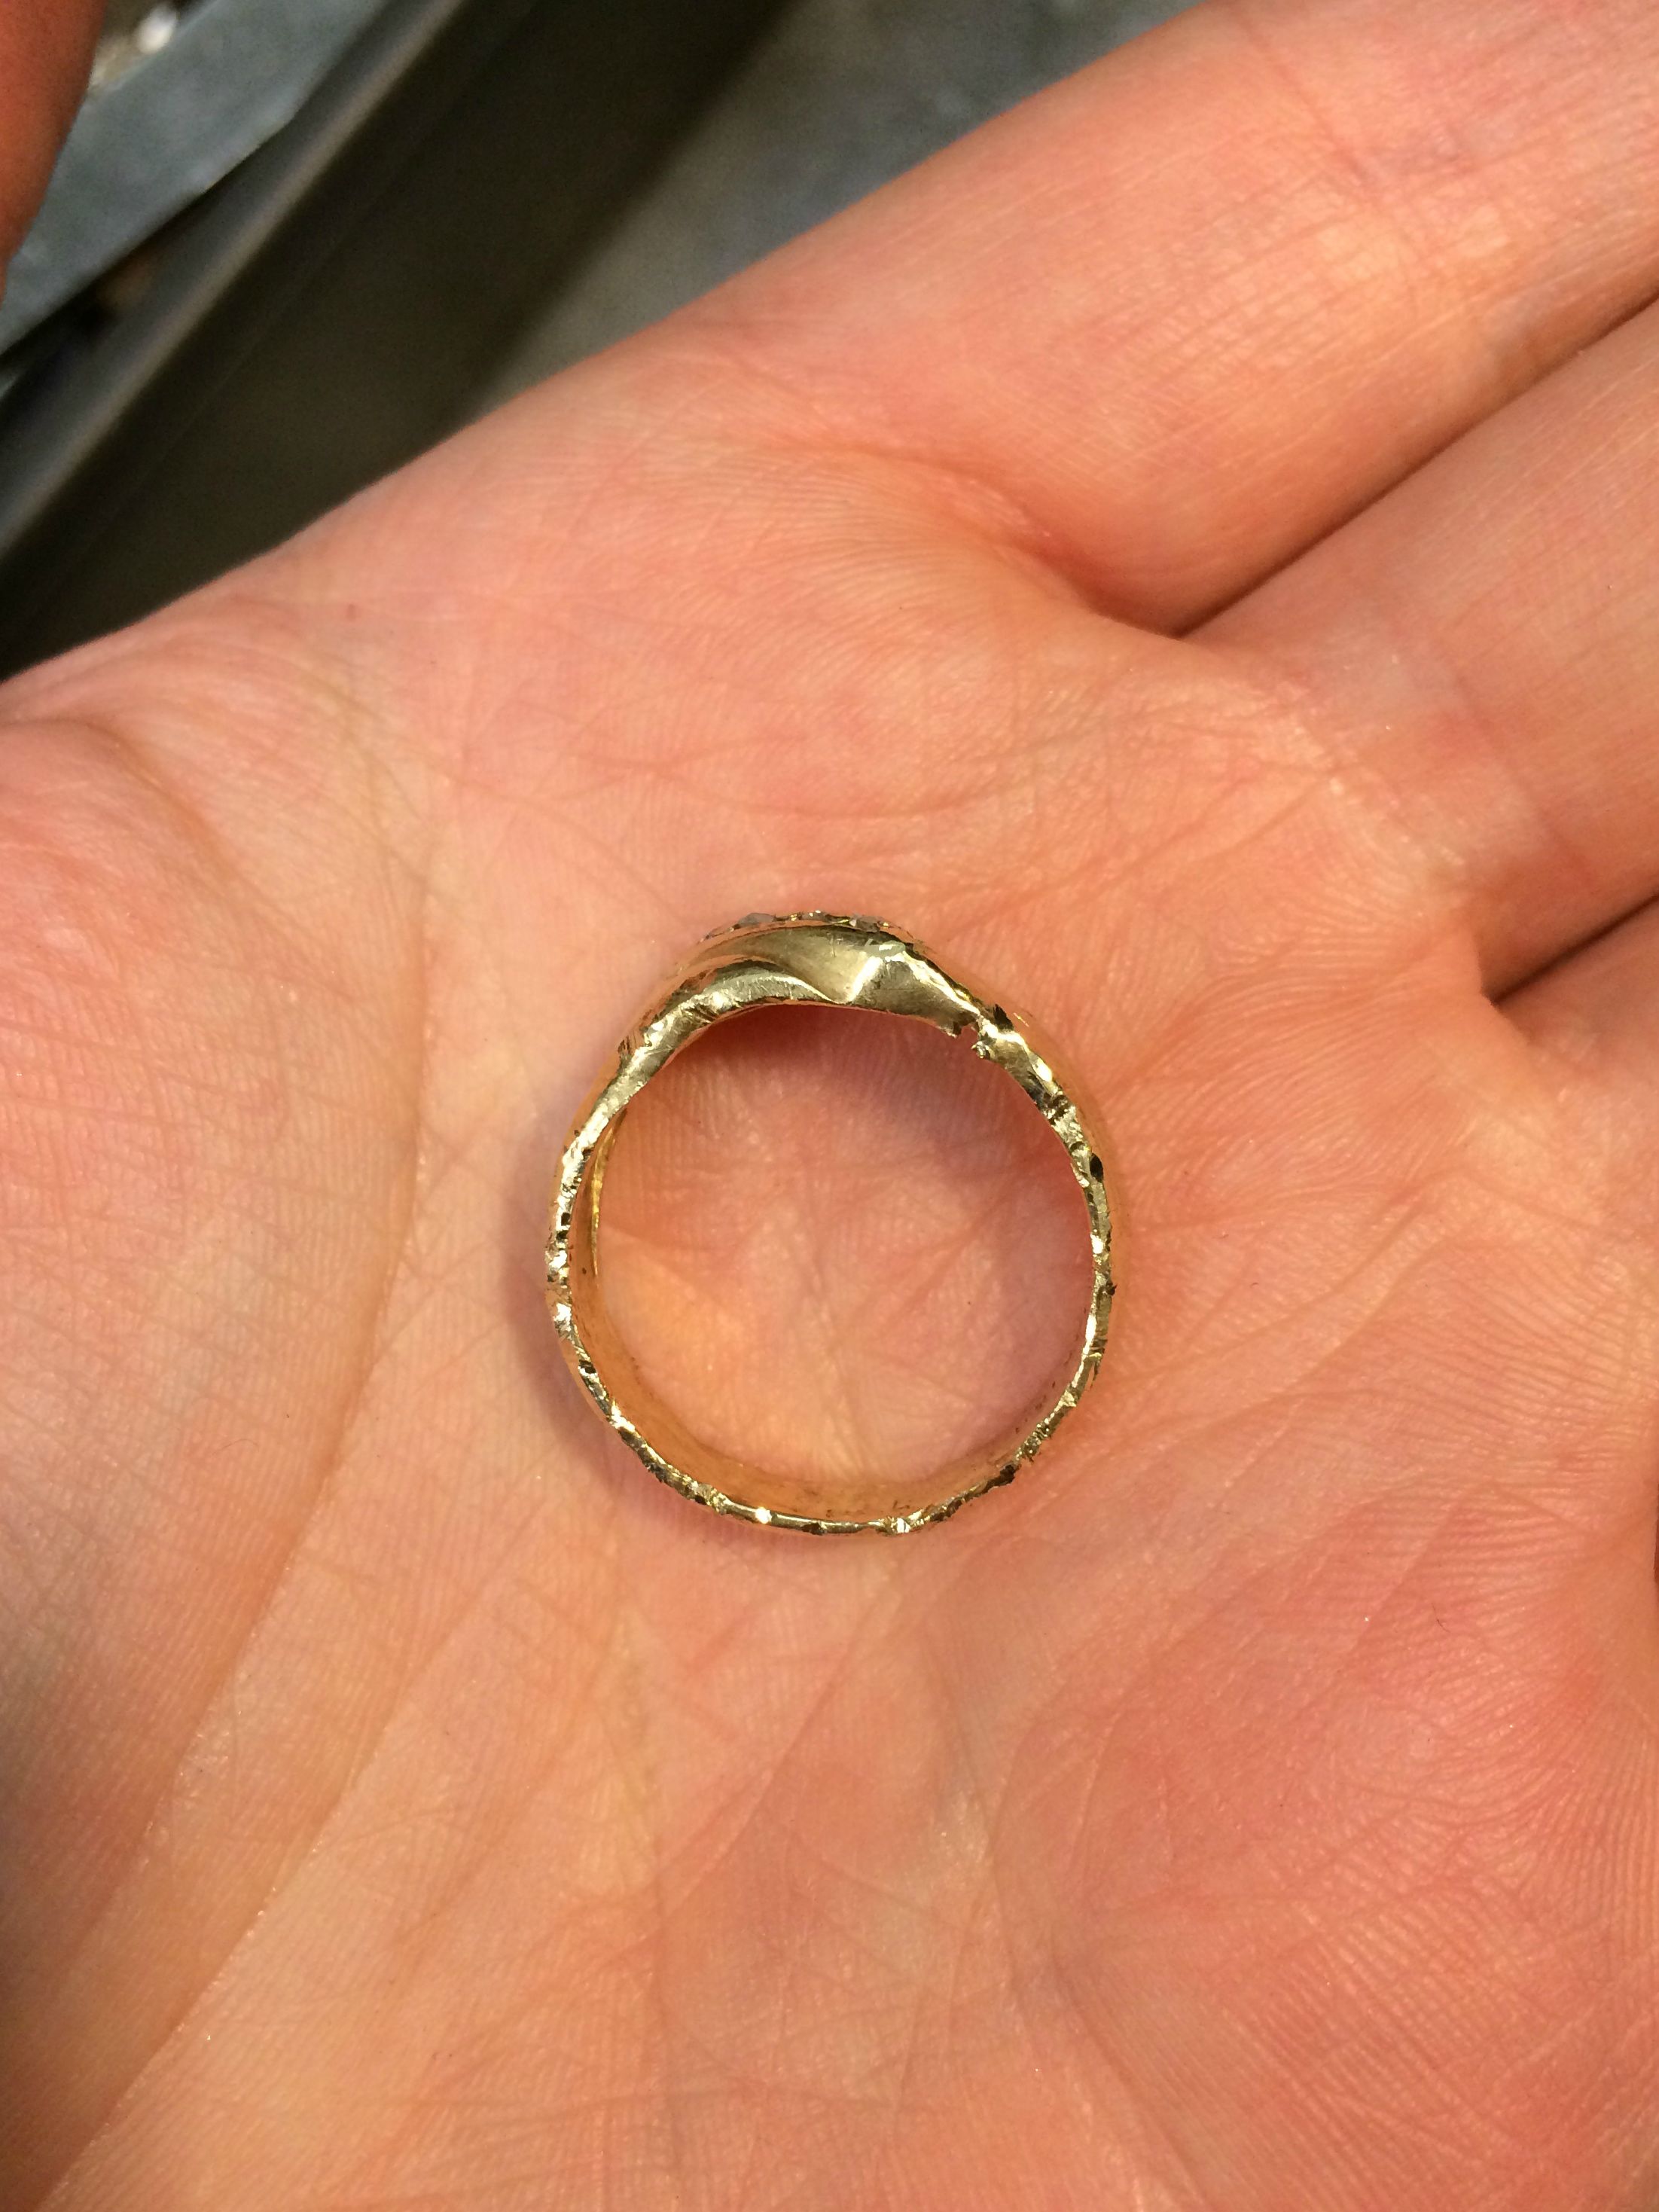 Колечко давно это давно. Кольцо обычное. Интересные кольца. Обручальное кольцо в оадоне. Кольцо на руке.